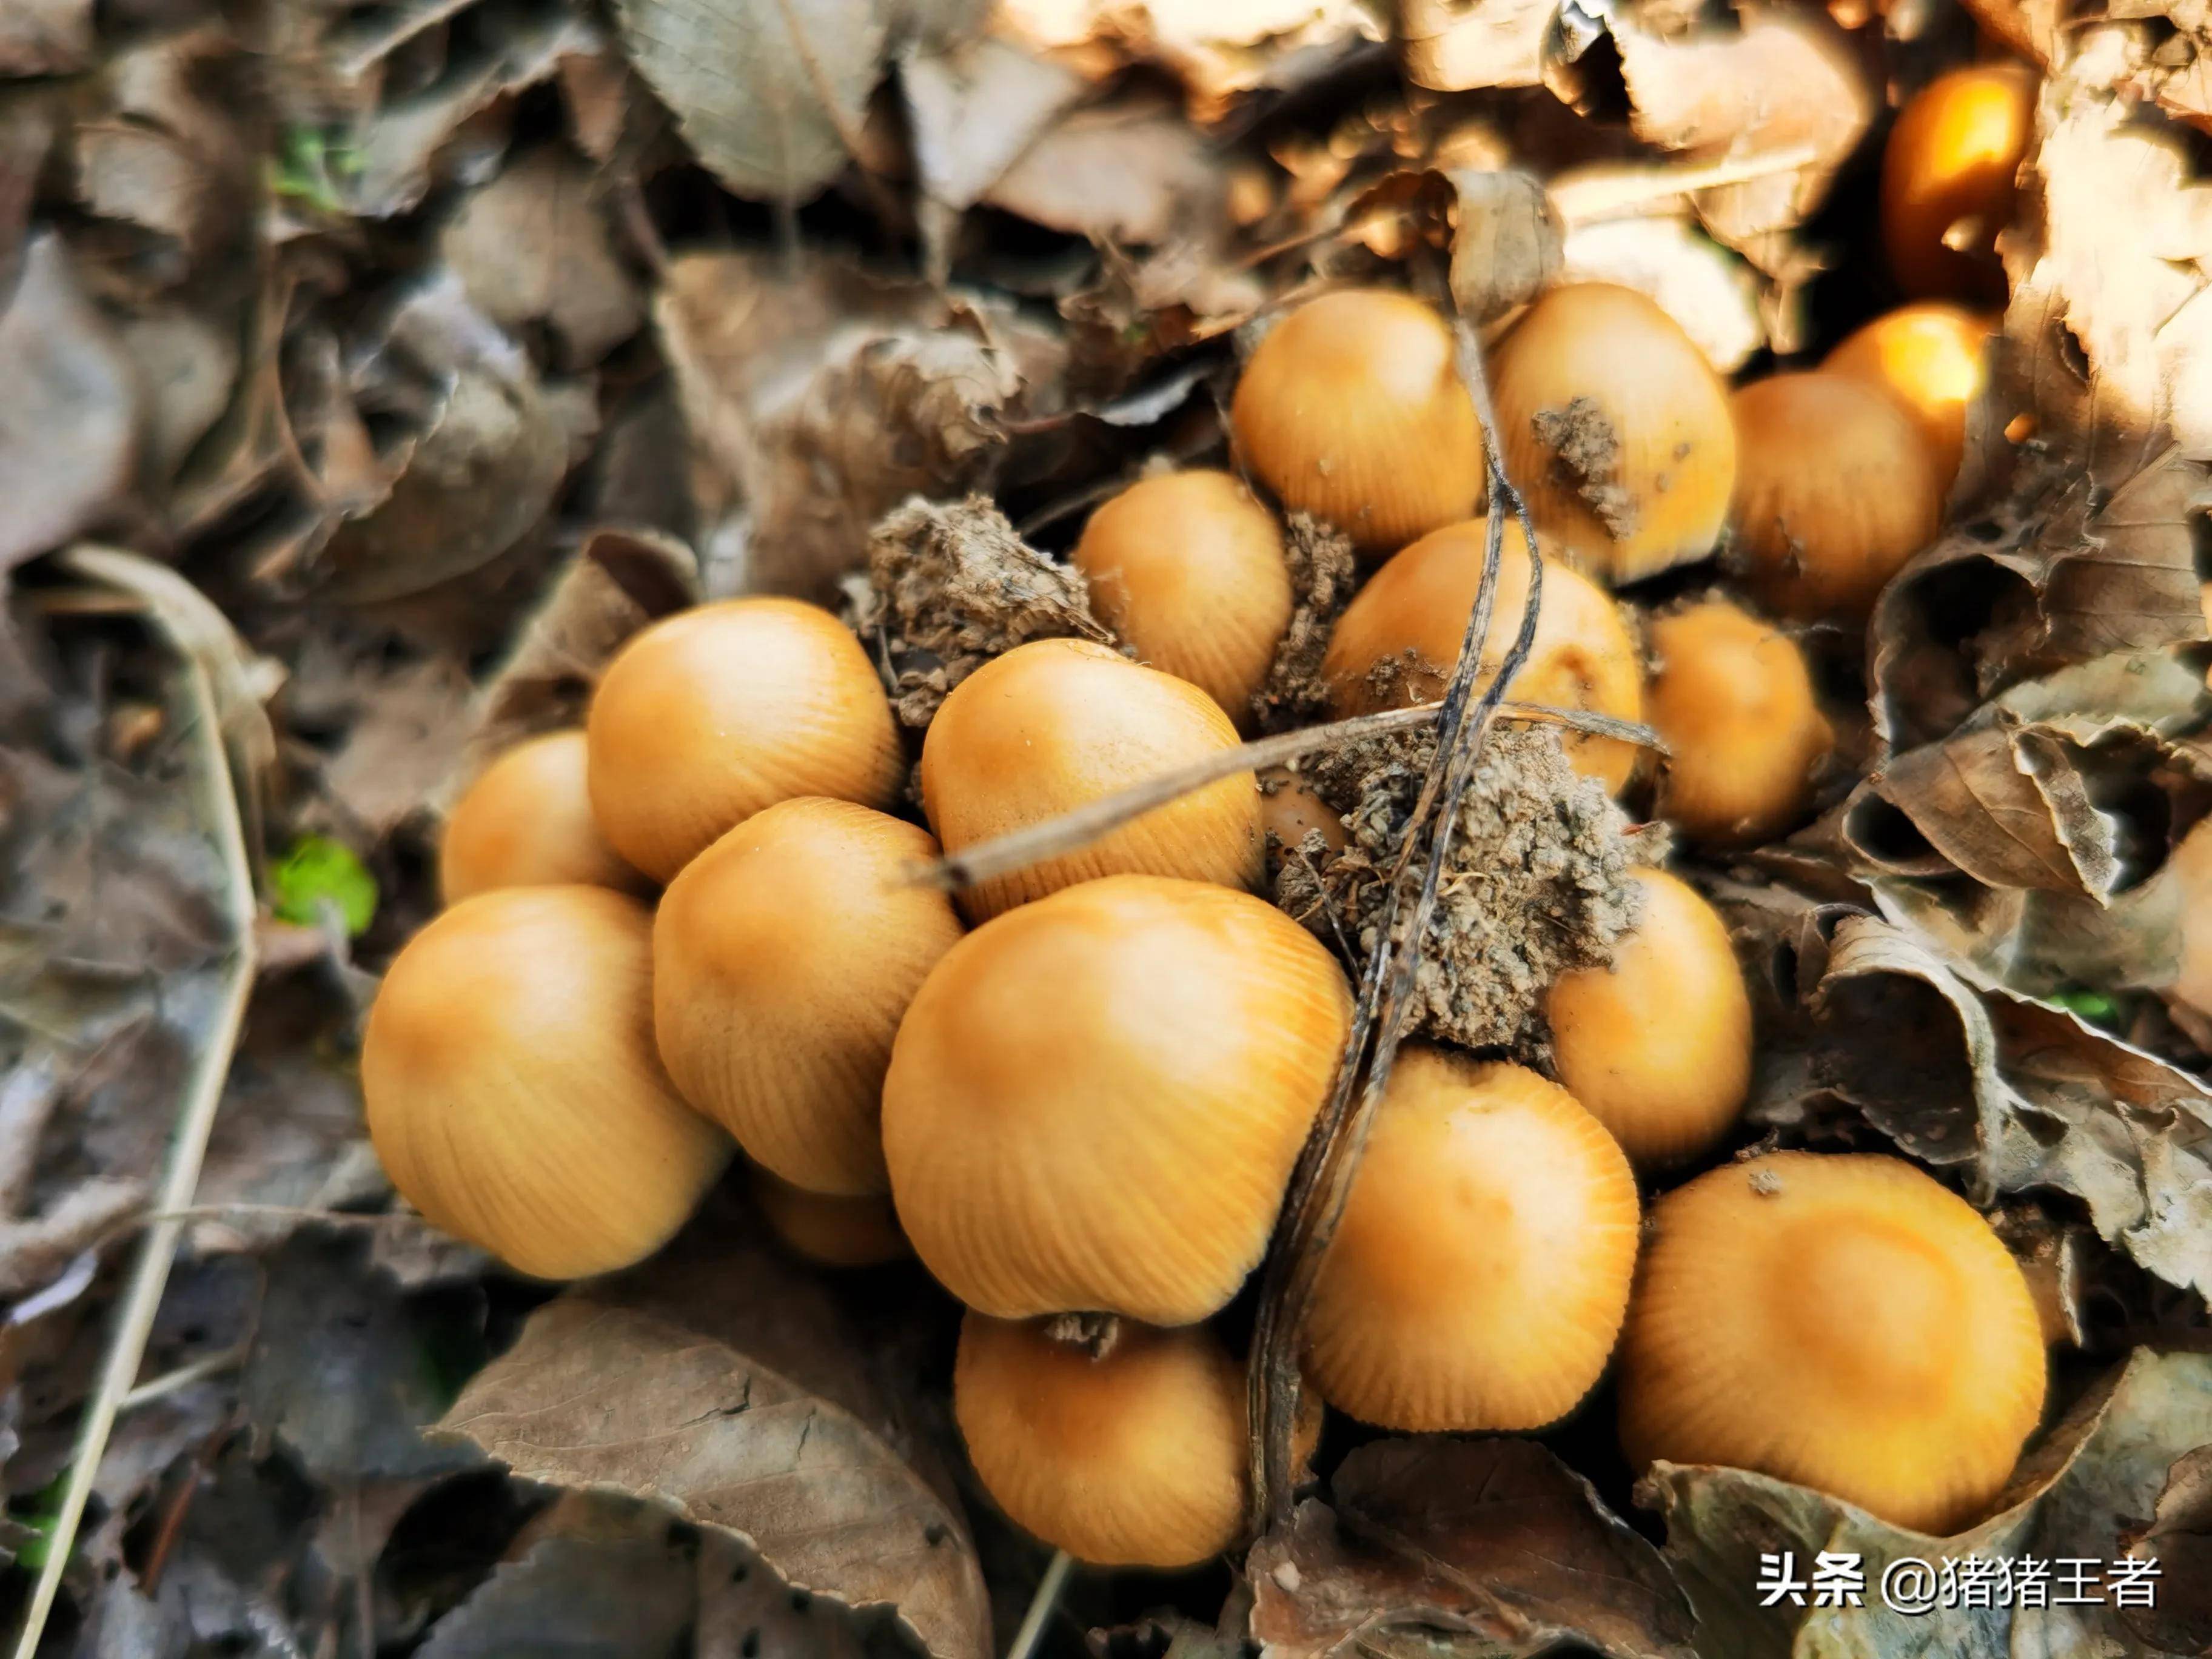 今天在榆树林里发现了一些小蘑菇,不知道这种小蘑菇能